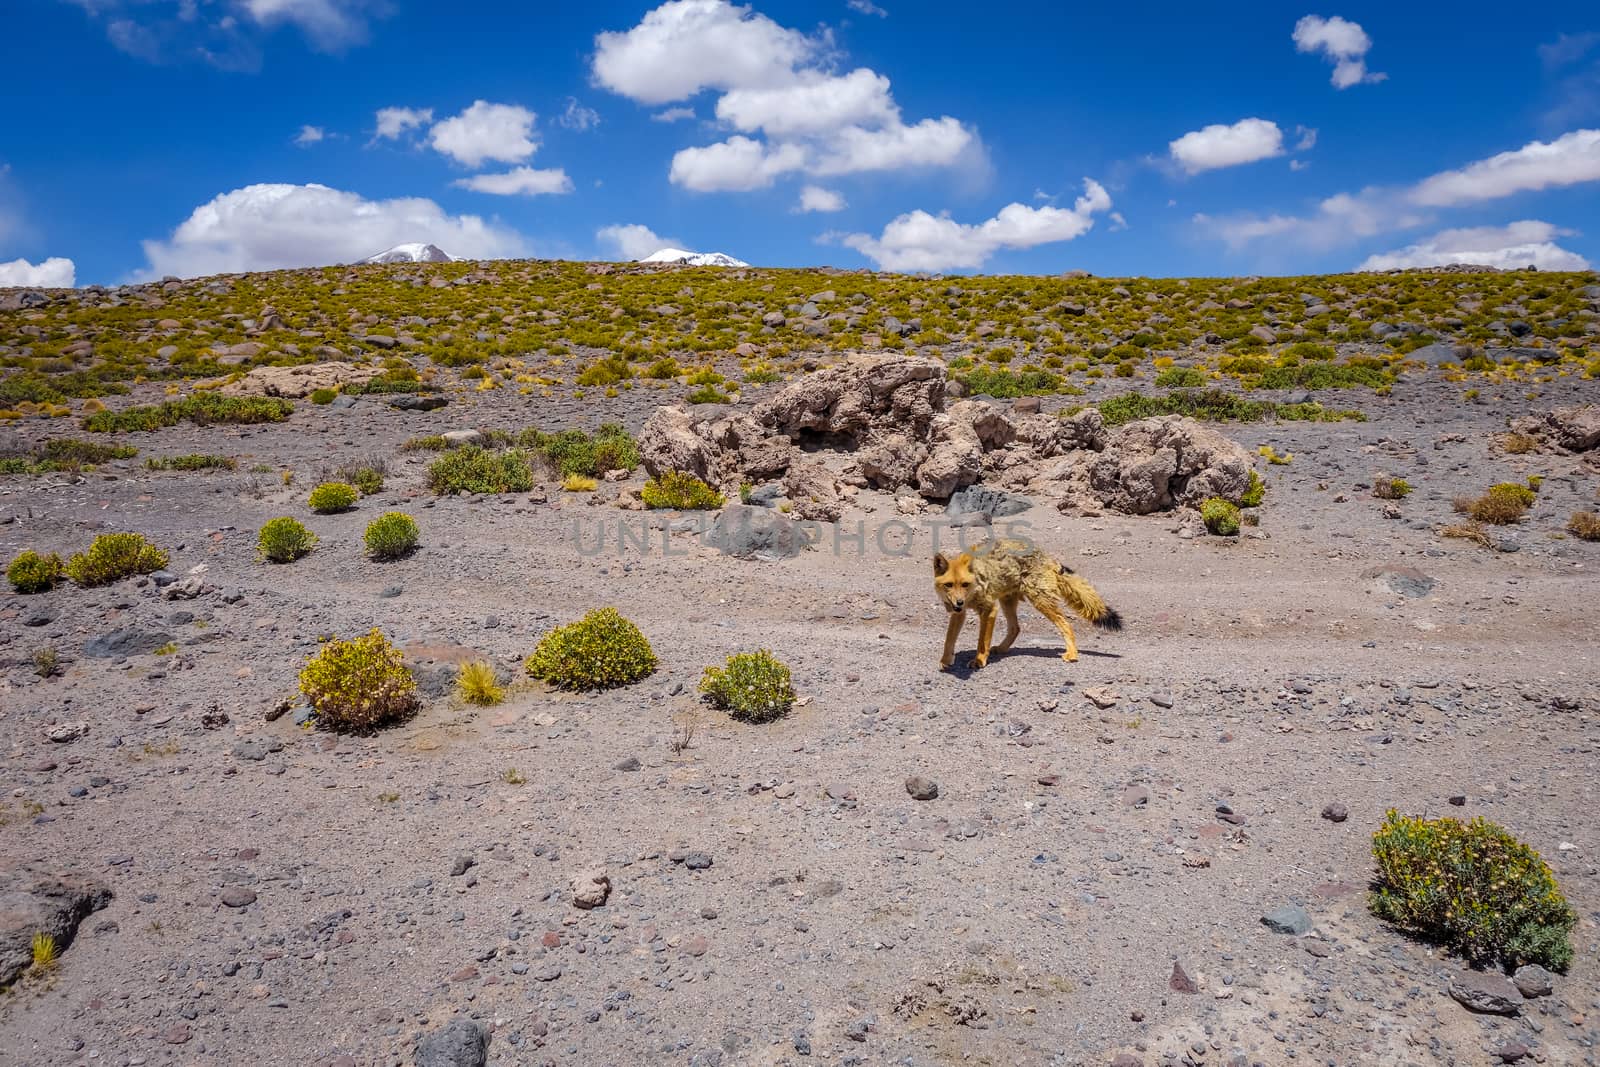 Red fox in Altiplano desert, sud Lipez reserva, Bolivia by daboost